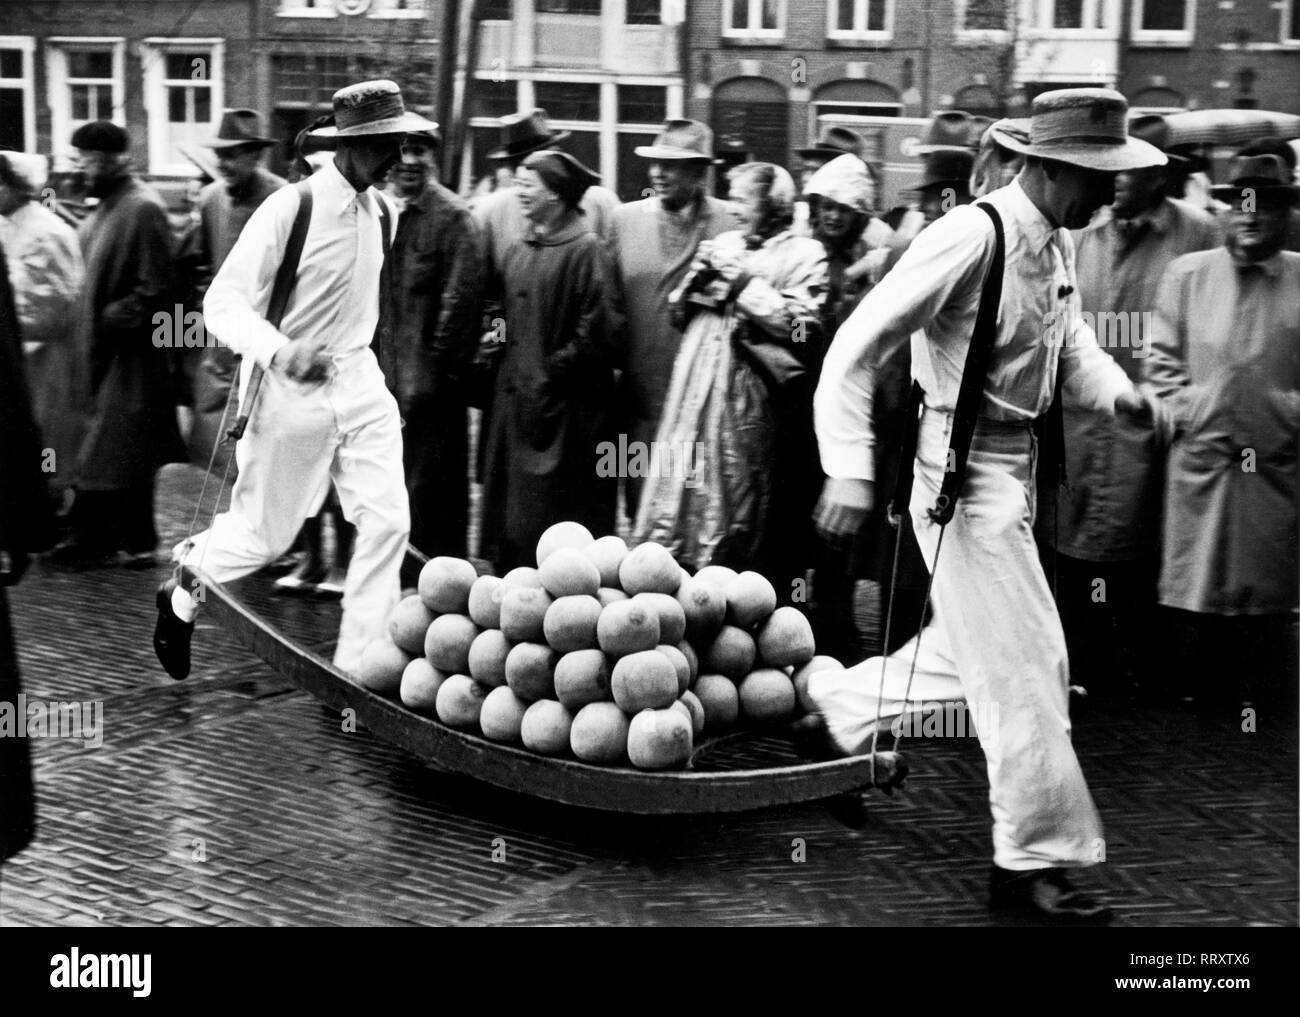 Netherlands - Käsemarkt in Alkmaar, Niederlande, Käseträger bei der Arbeit. Cheese market at Alkmaar. Aufnahme um 1954 Stock Photo